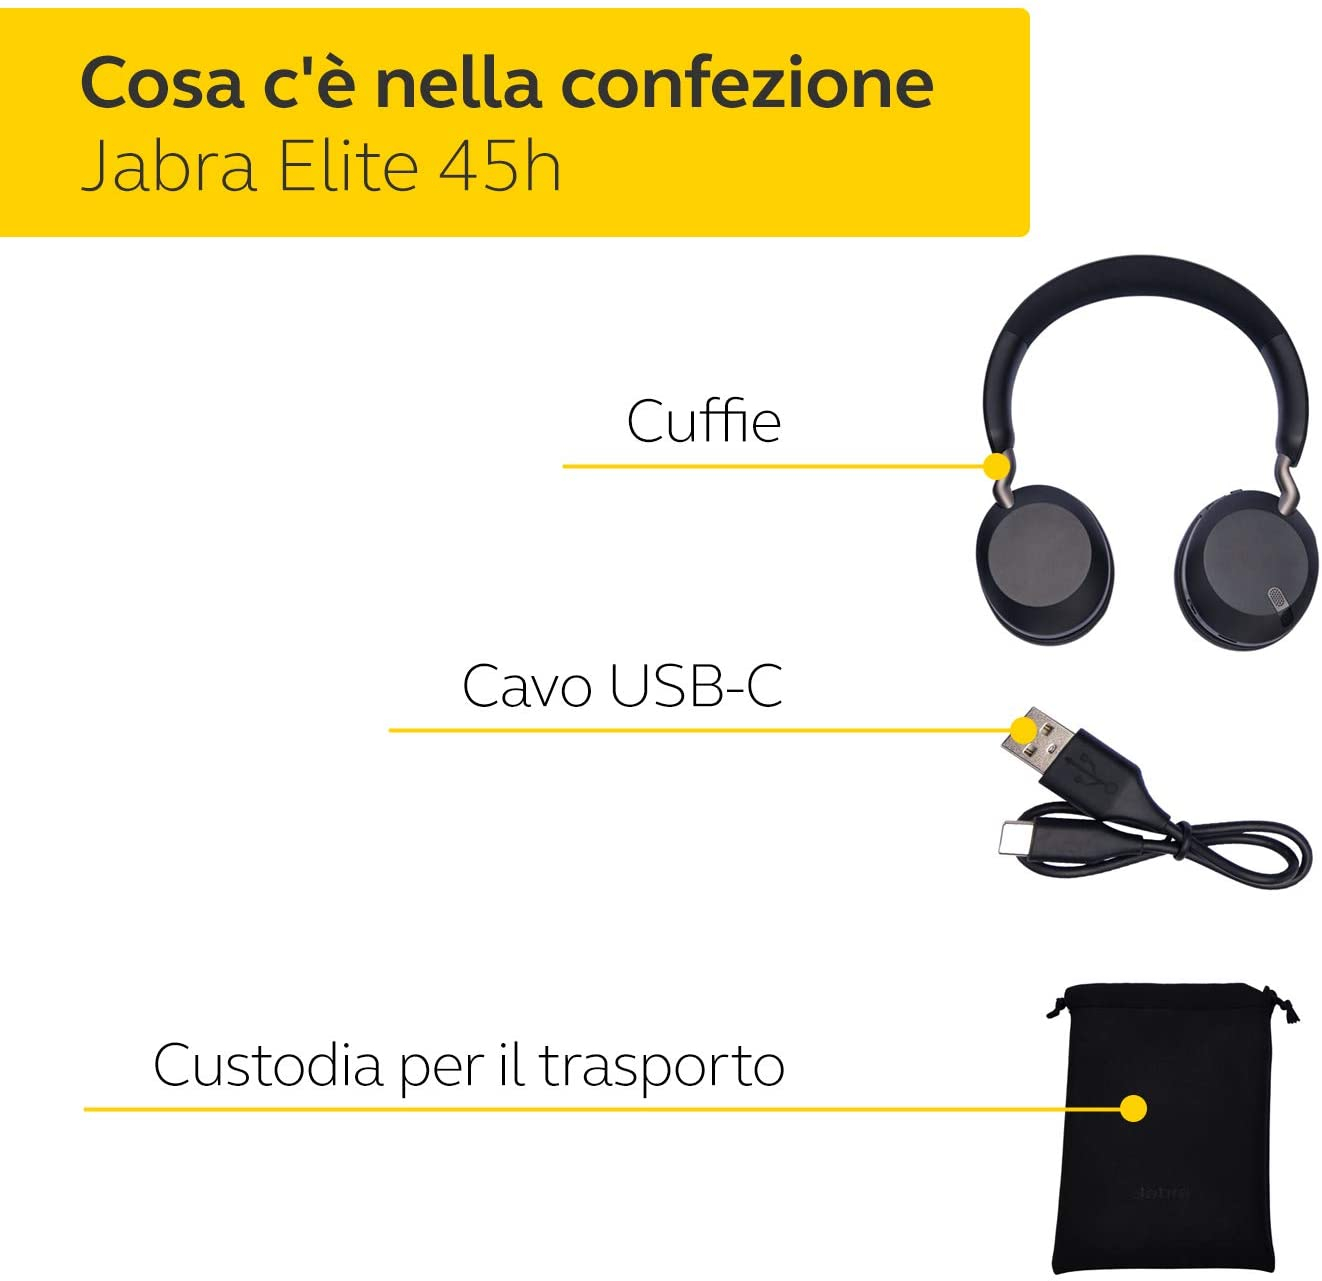 Cuffie Wireless Jabra